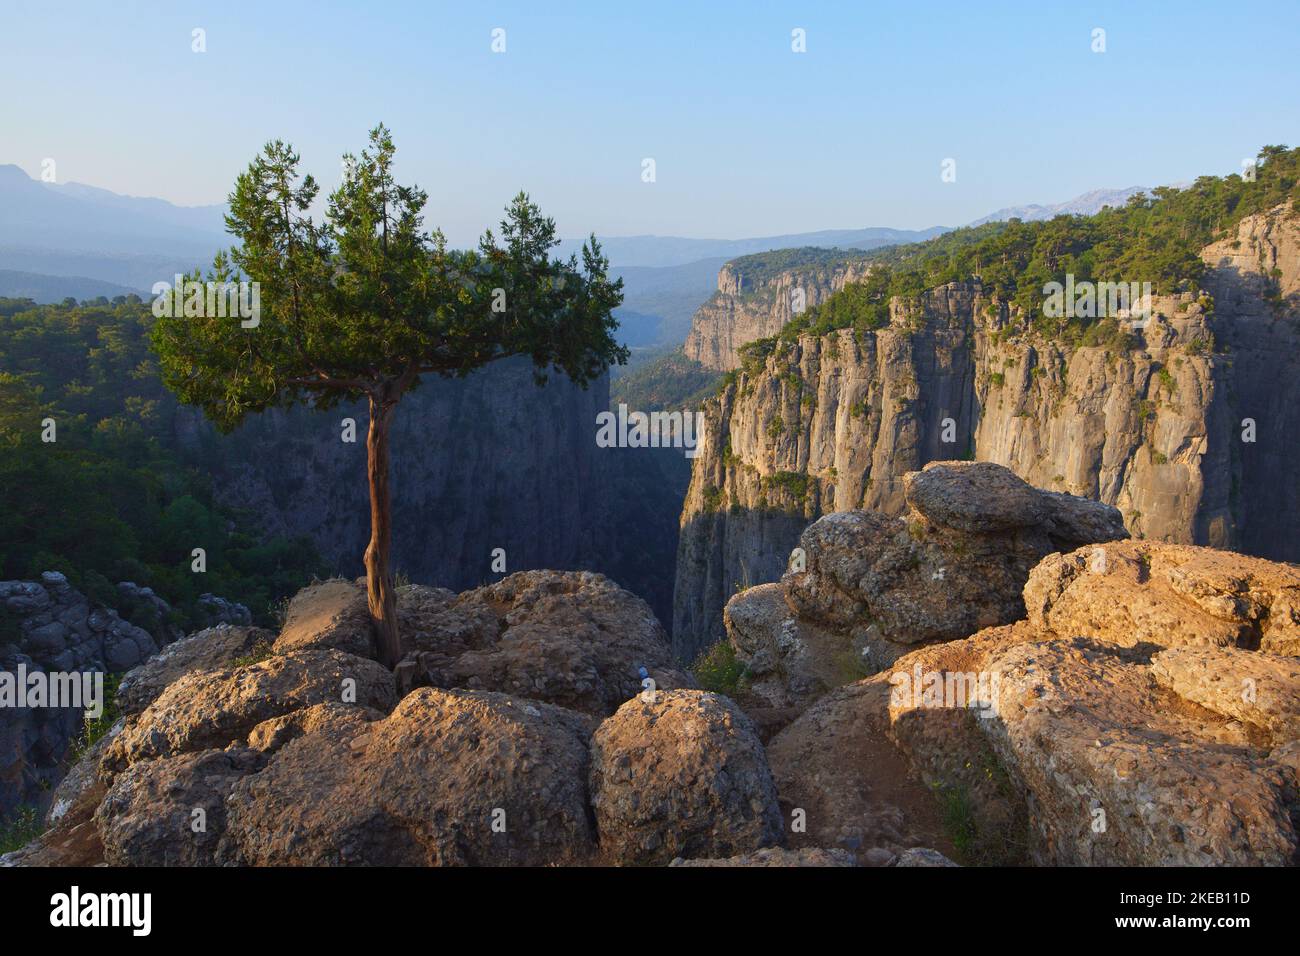 Splendida vista sul Tazi Canyon. Paesaggio epico di rocce a strapiombo e scogliere nel parco nazionale turco Foto Stock